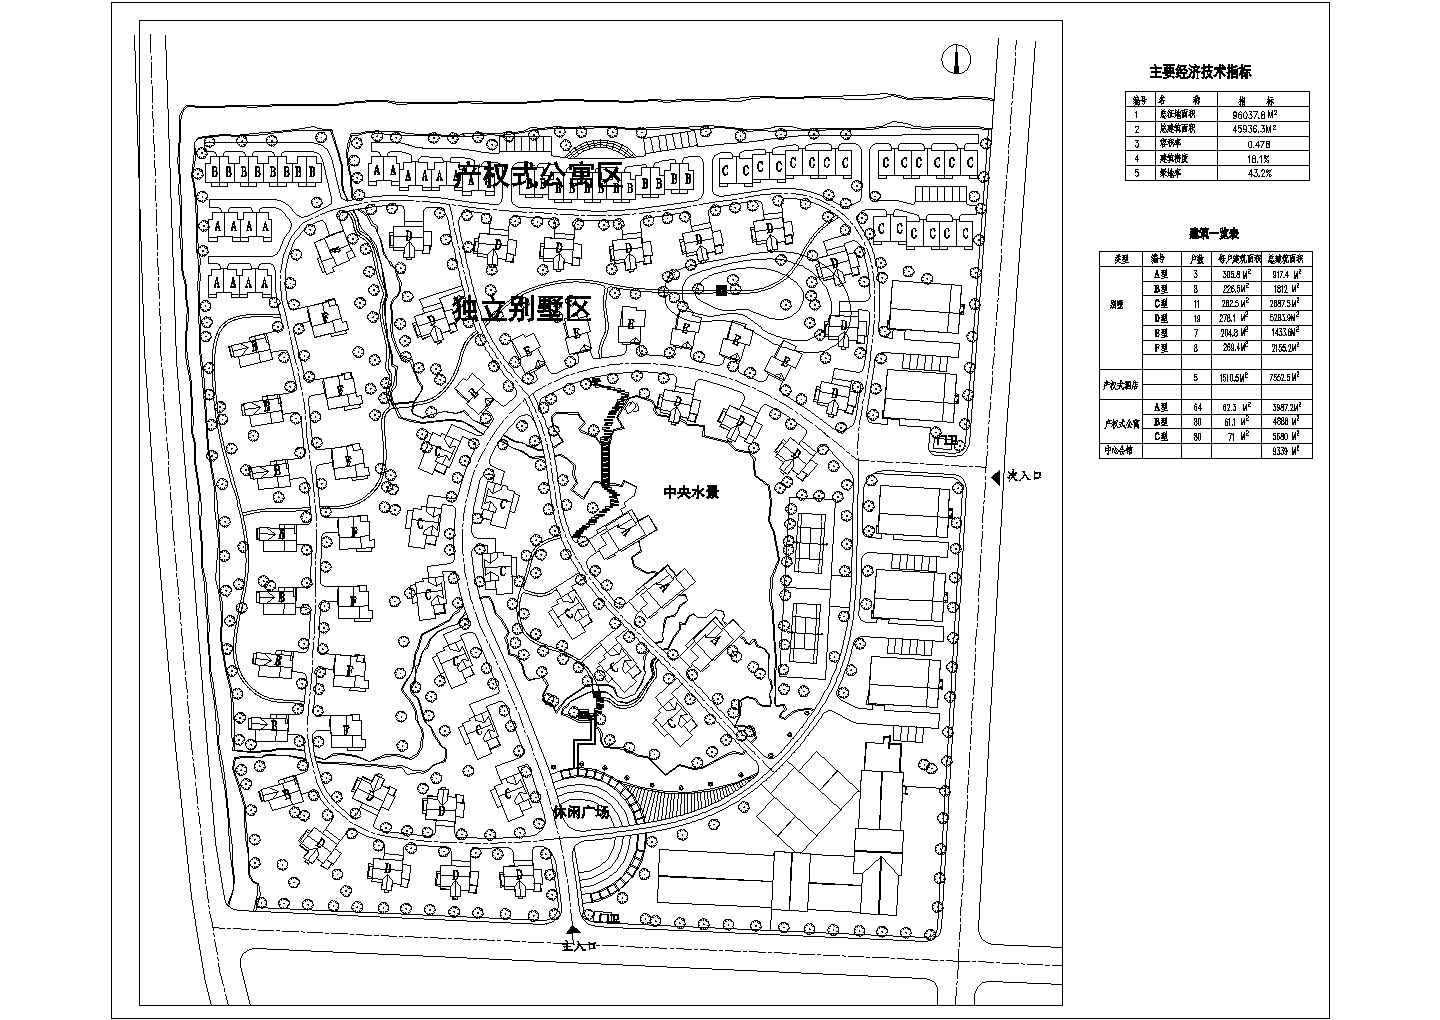 某地小型别墅小区的建筑总体规划图